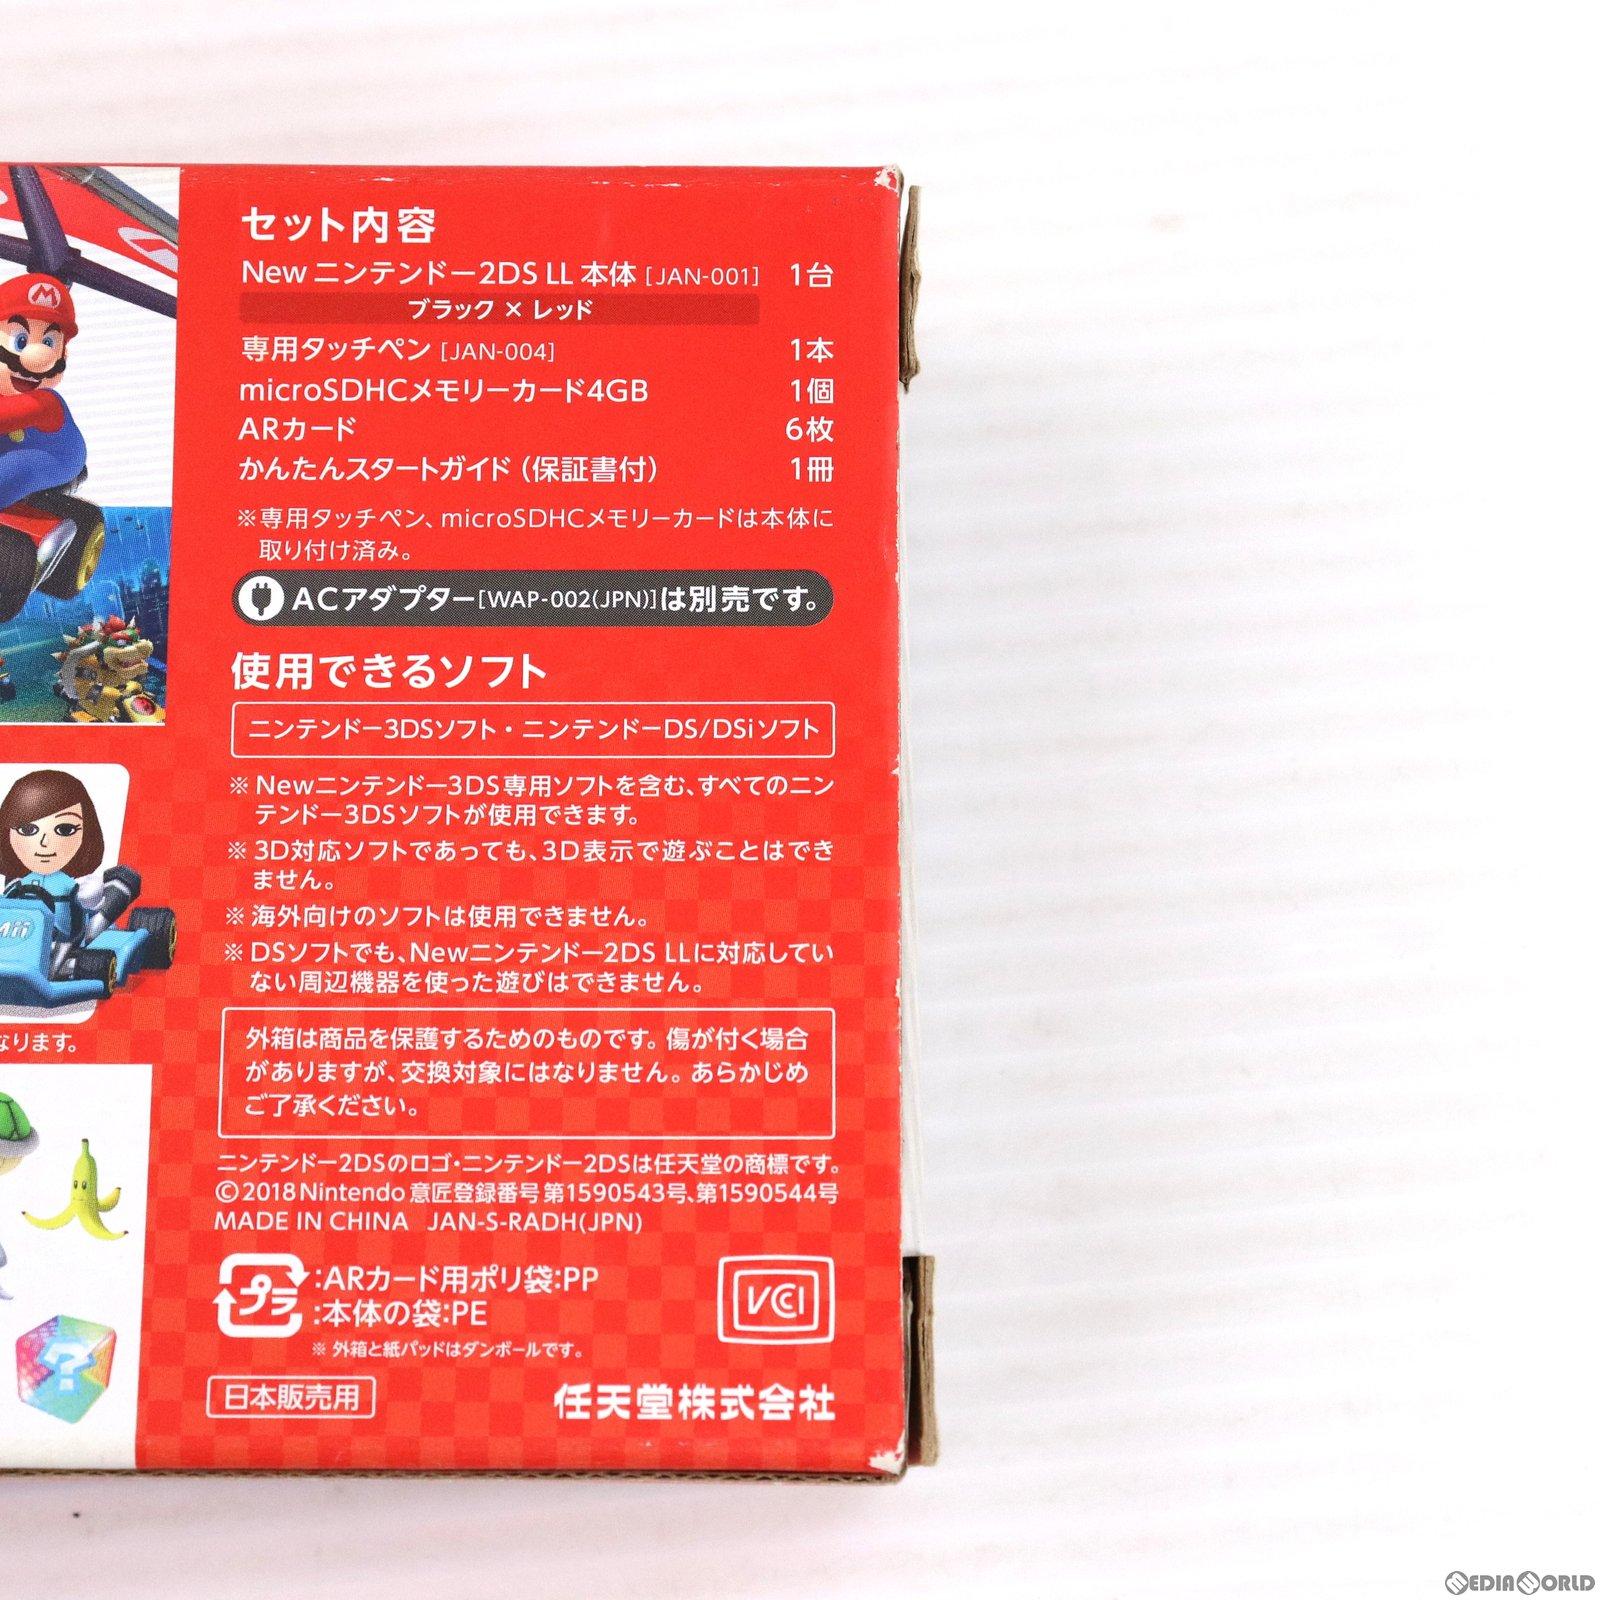 【中古即納】[本体][3DS]Newニンテンドー2DS LL マリオカート7パック(JAN-S-RADH)(20180719)